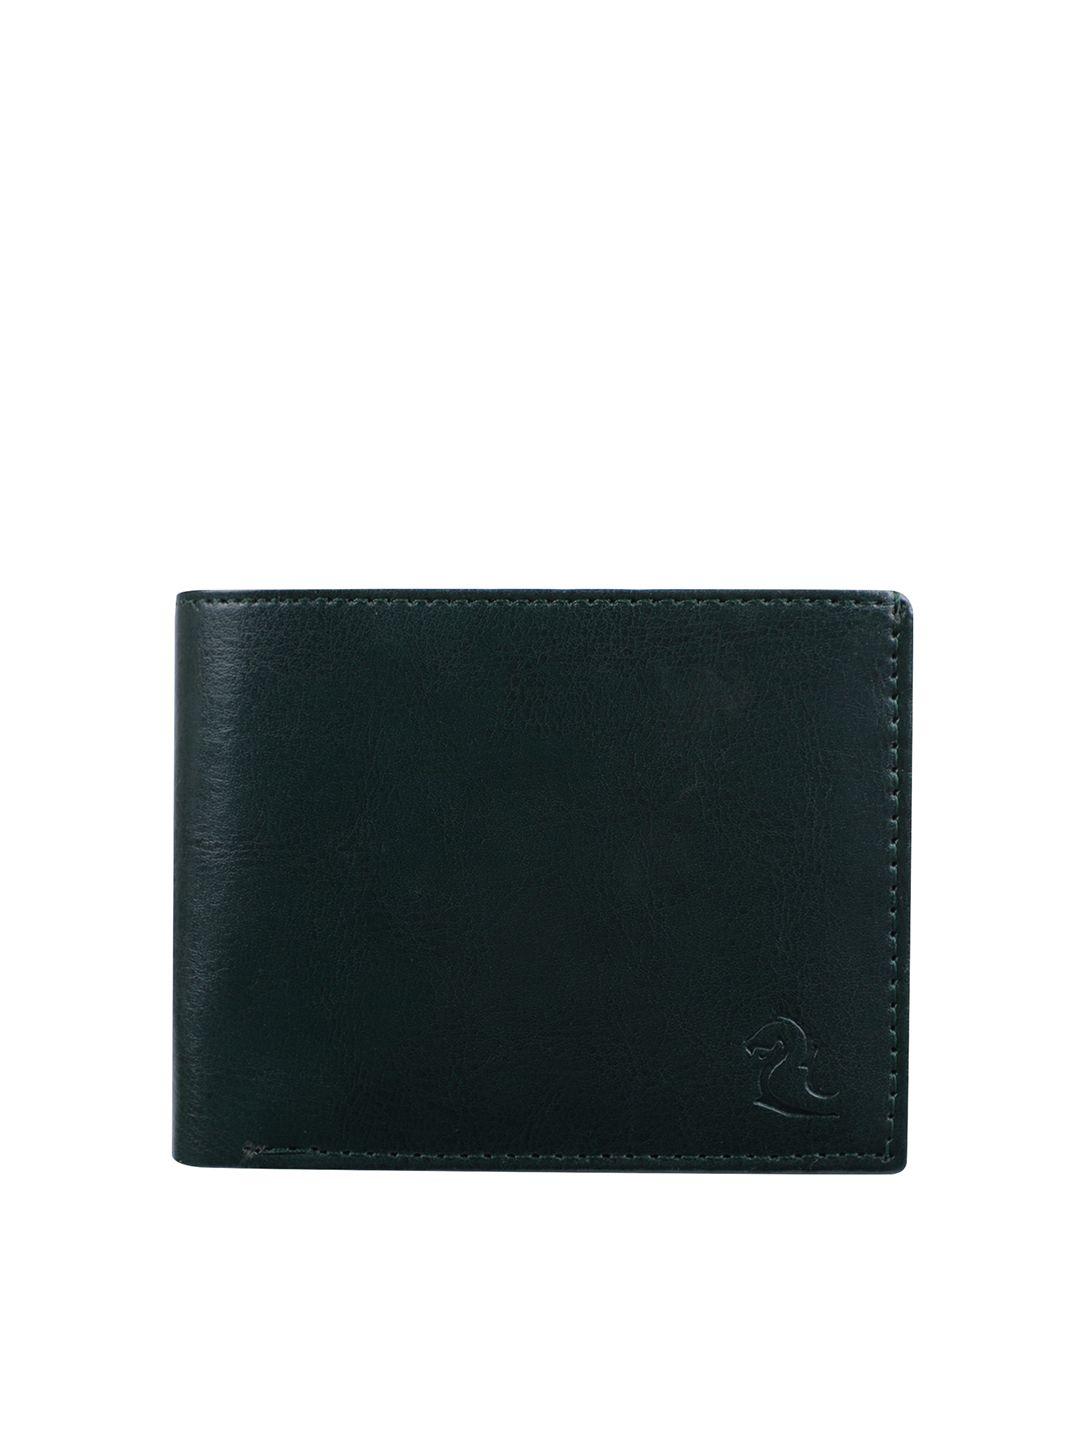 kara men textured bi-fold wallet